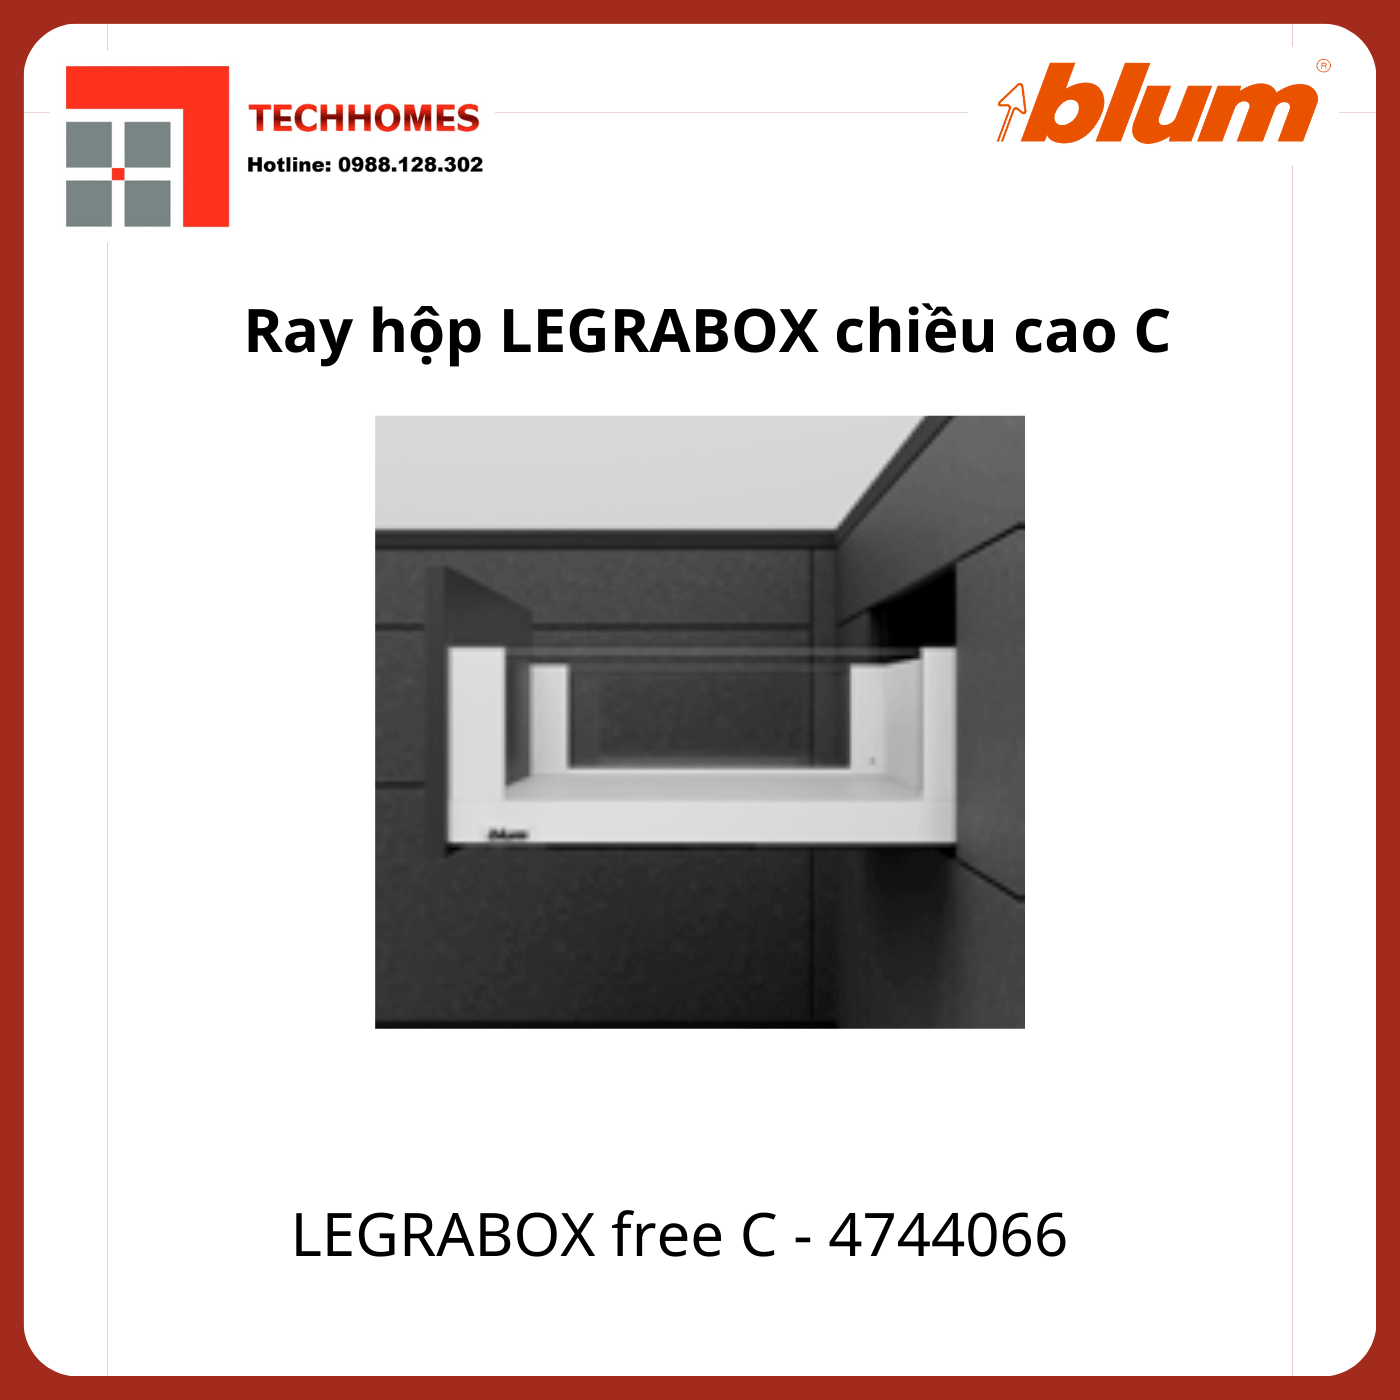 Ray hộp LEGRABOX free C, chiều cao C 177mm,4744066 trắng